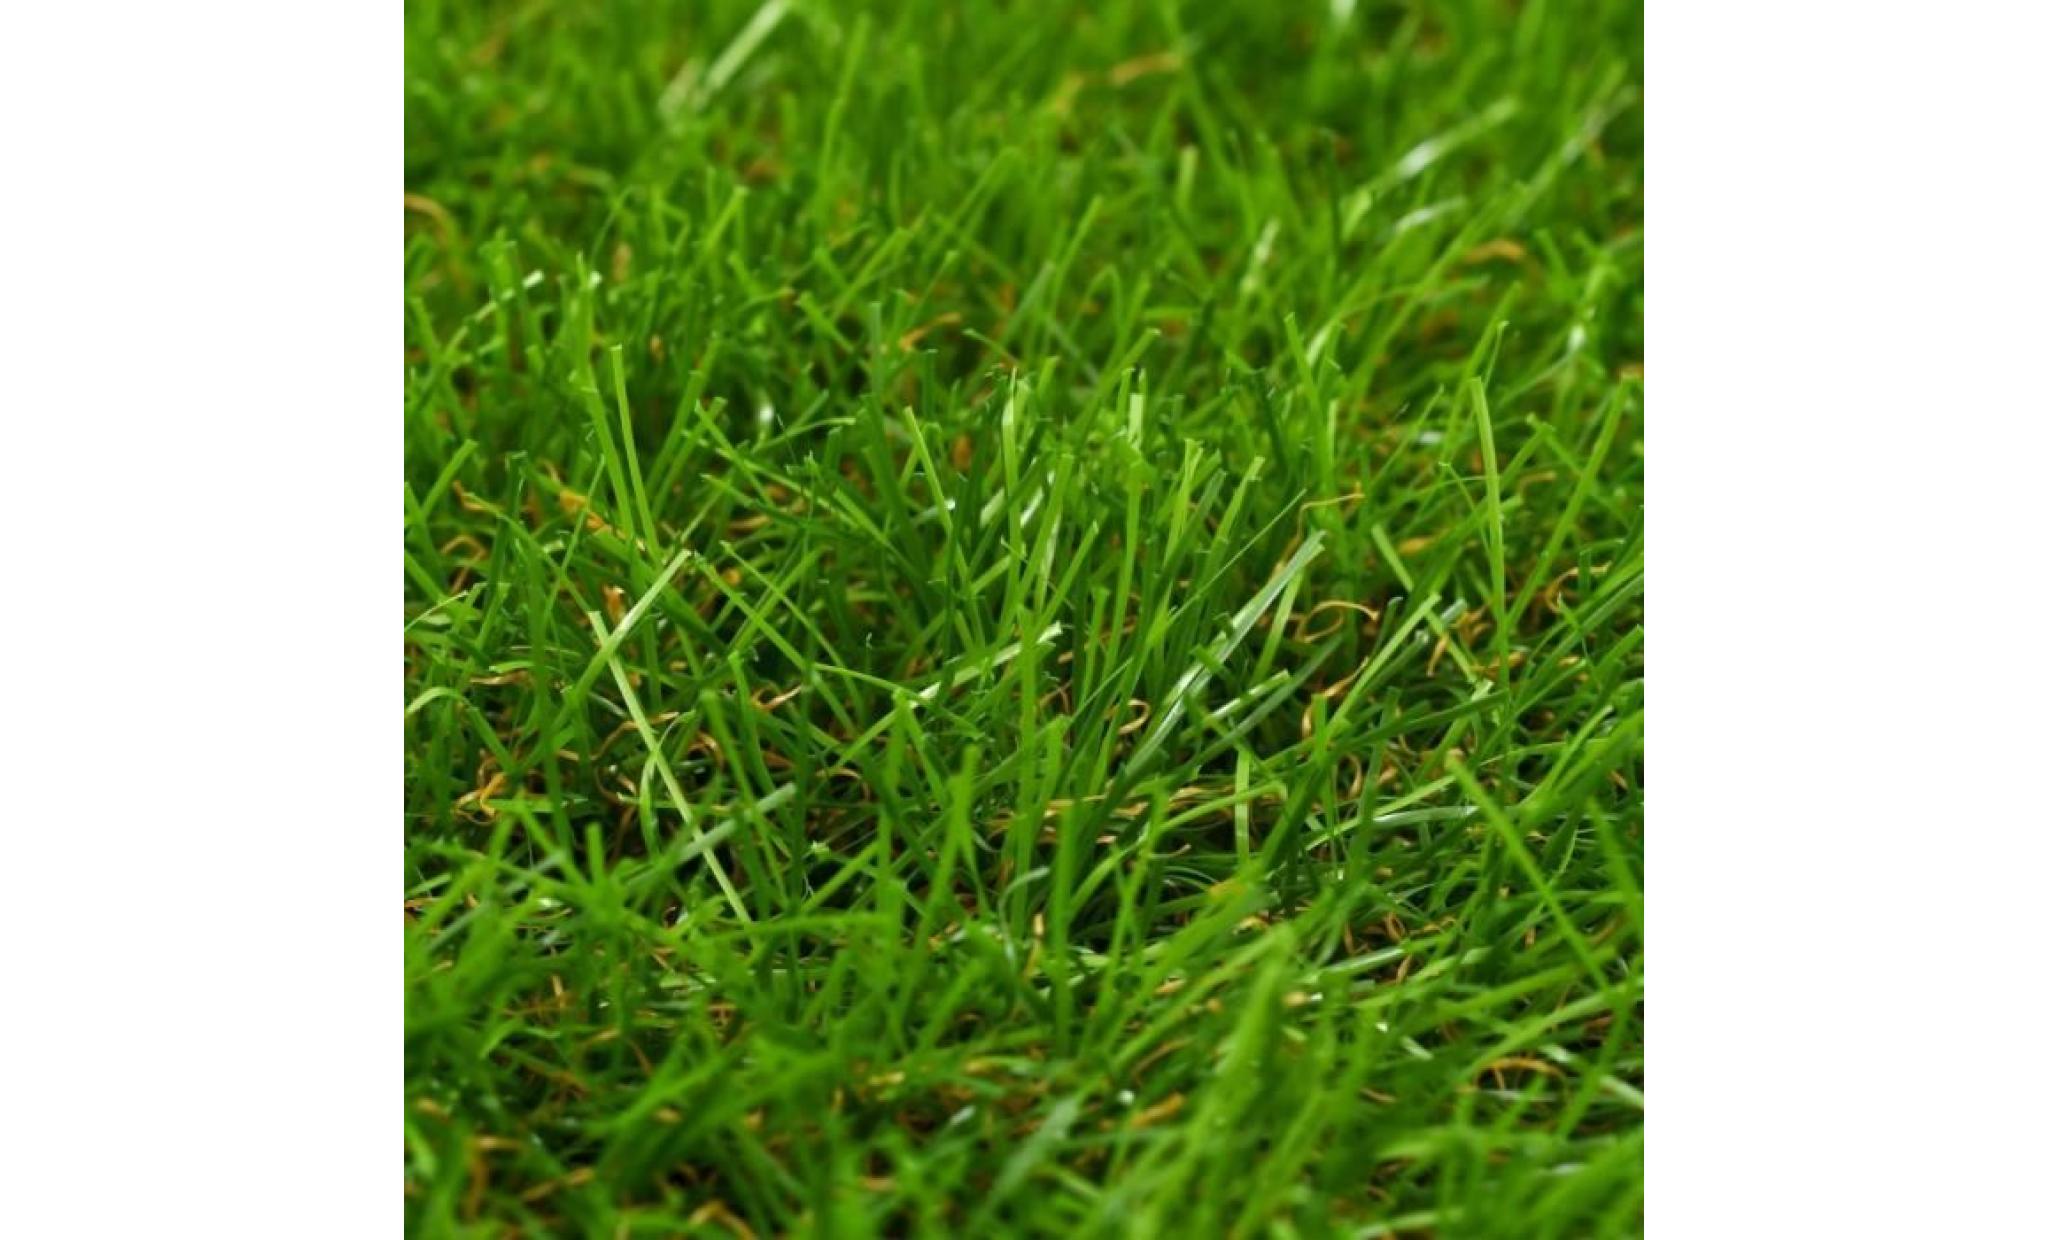 r30 ce gazon artificiel de 40 mm peut vous servir a creer une veritable pelouse, qui necessite un minimum d'entretien, m